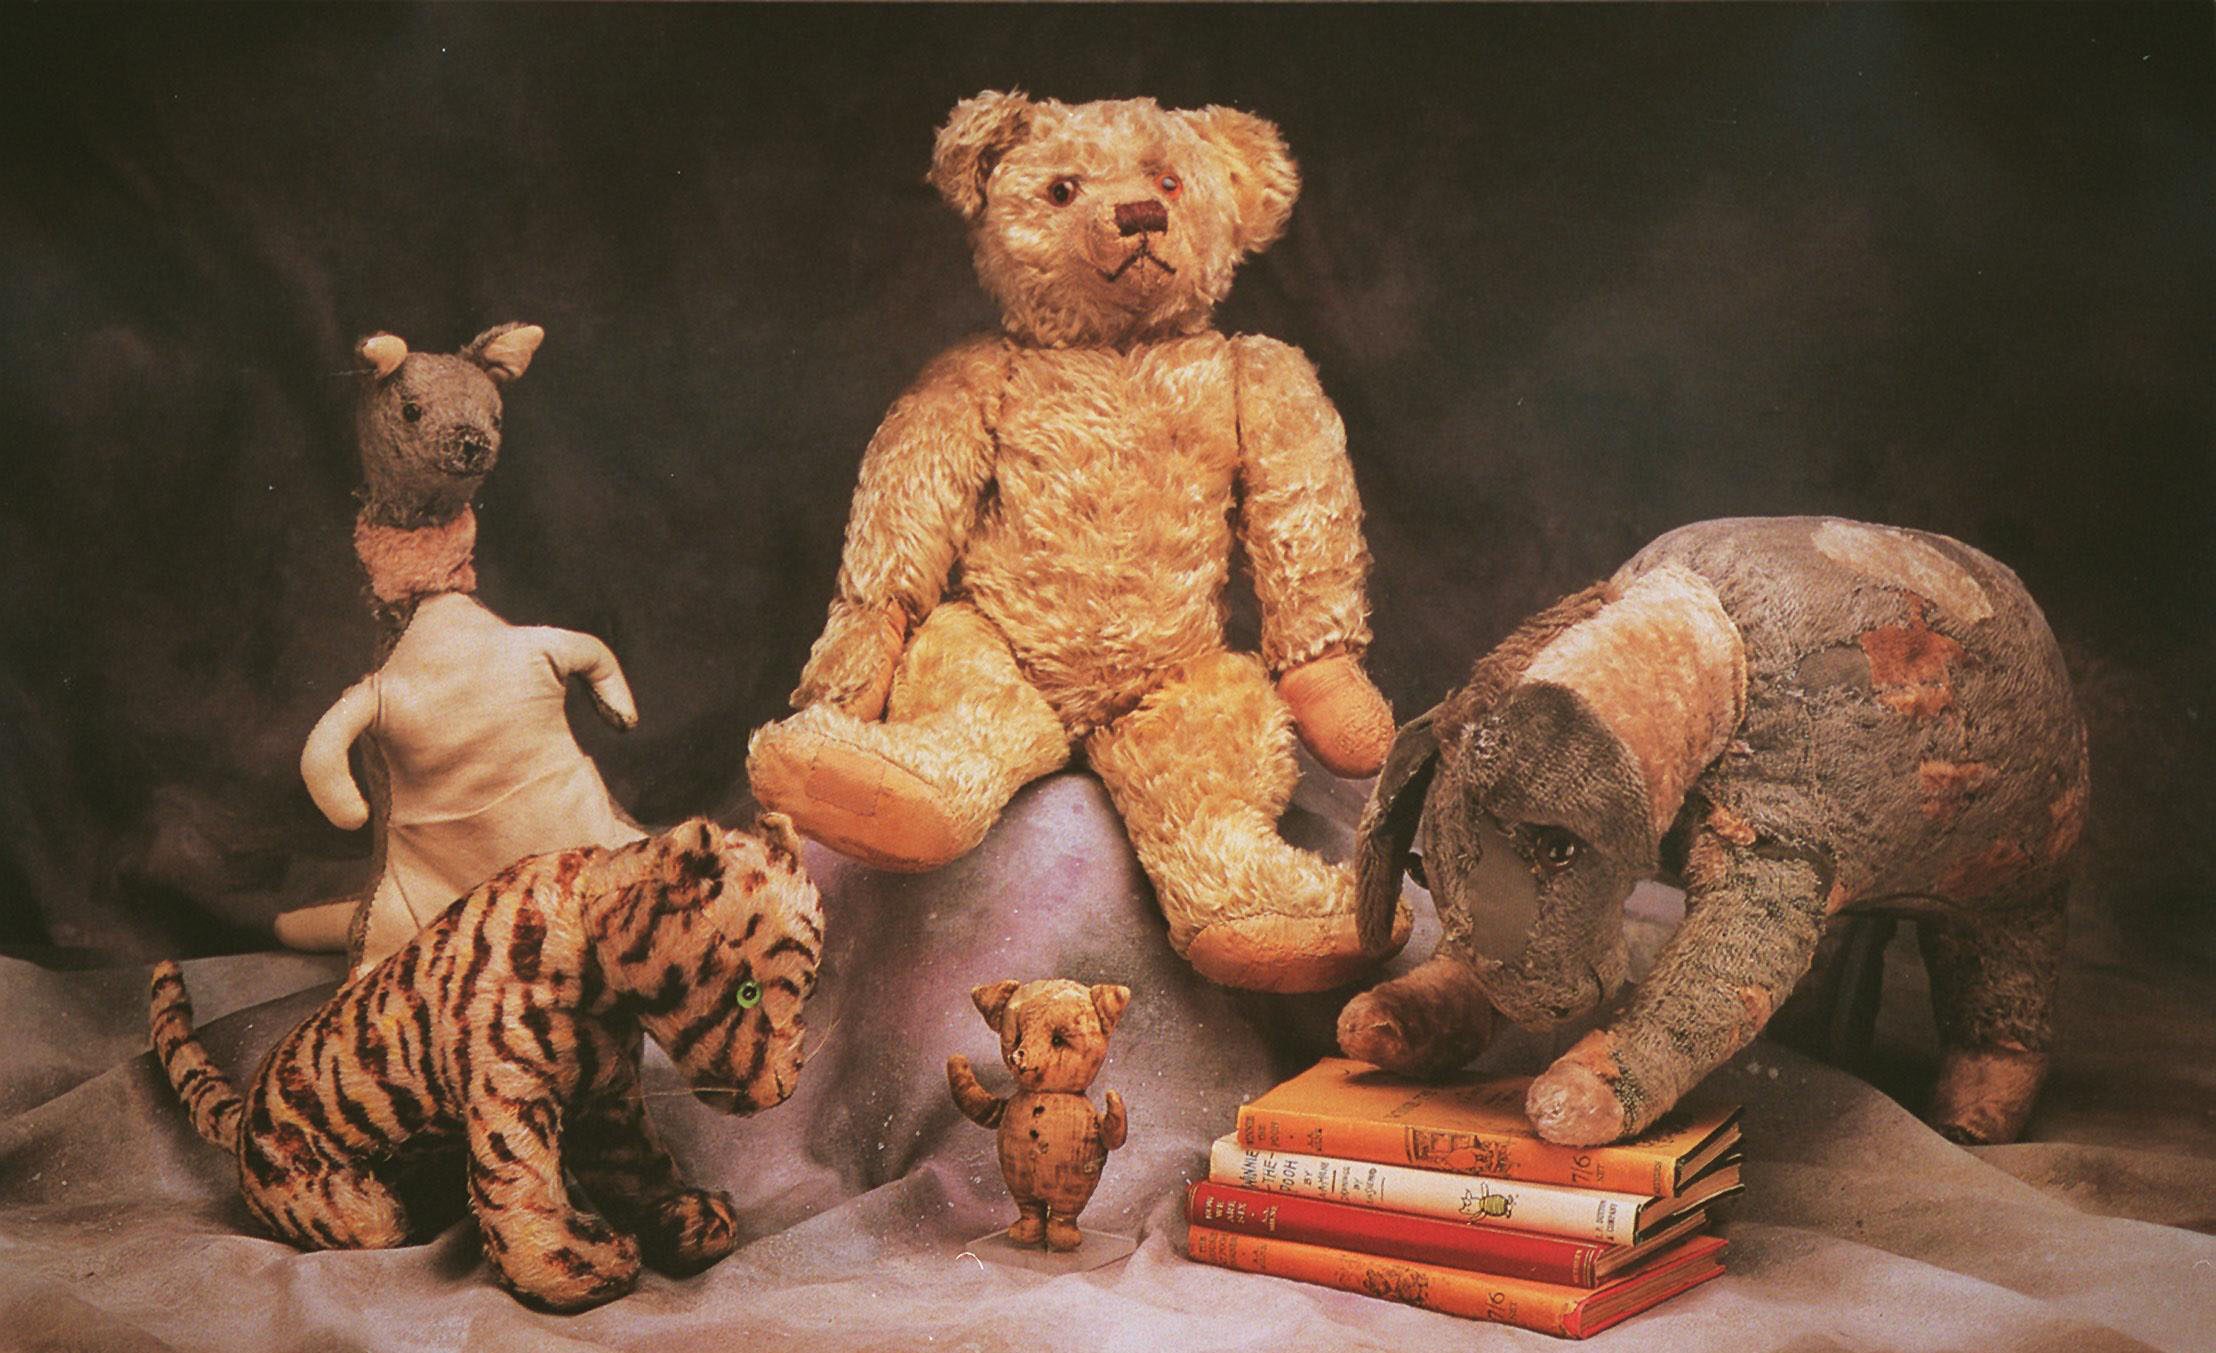 original stuffed winnie the pooh